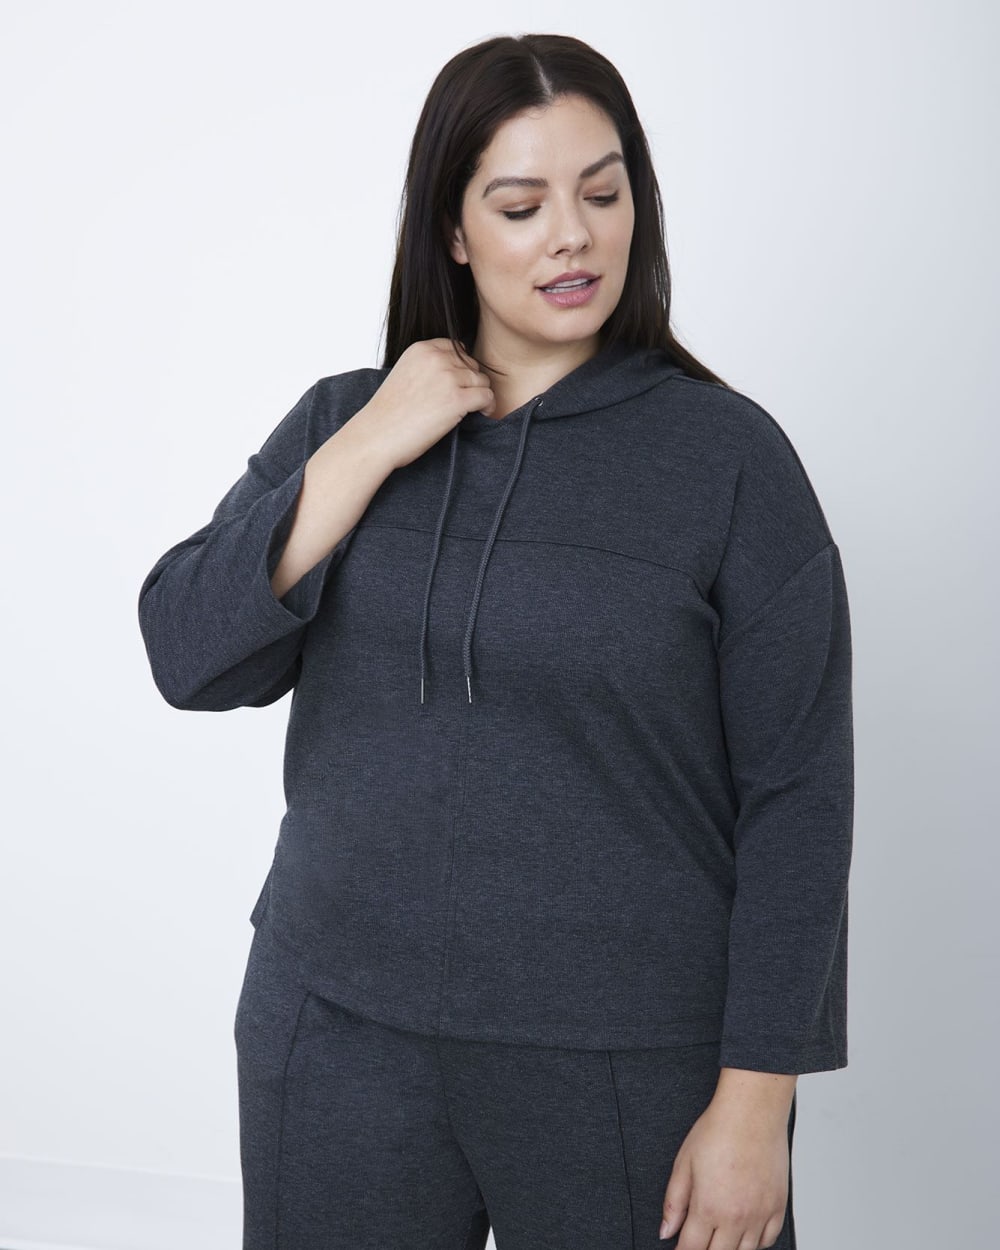 Cozy Long-Sleeve Hooded Sweatshirt - Active Zone